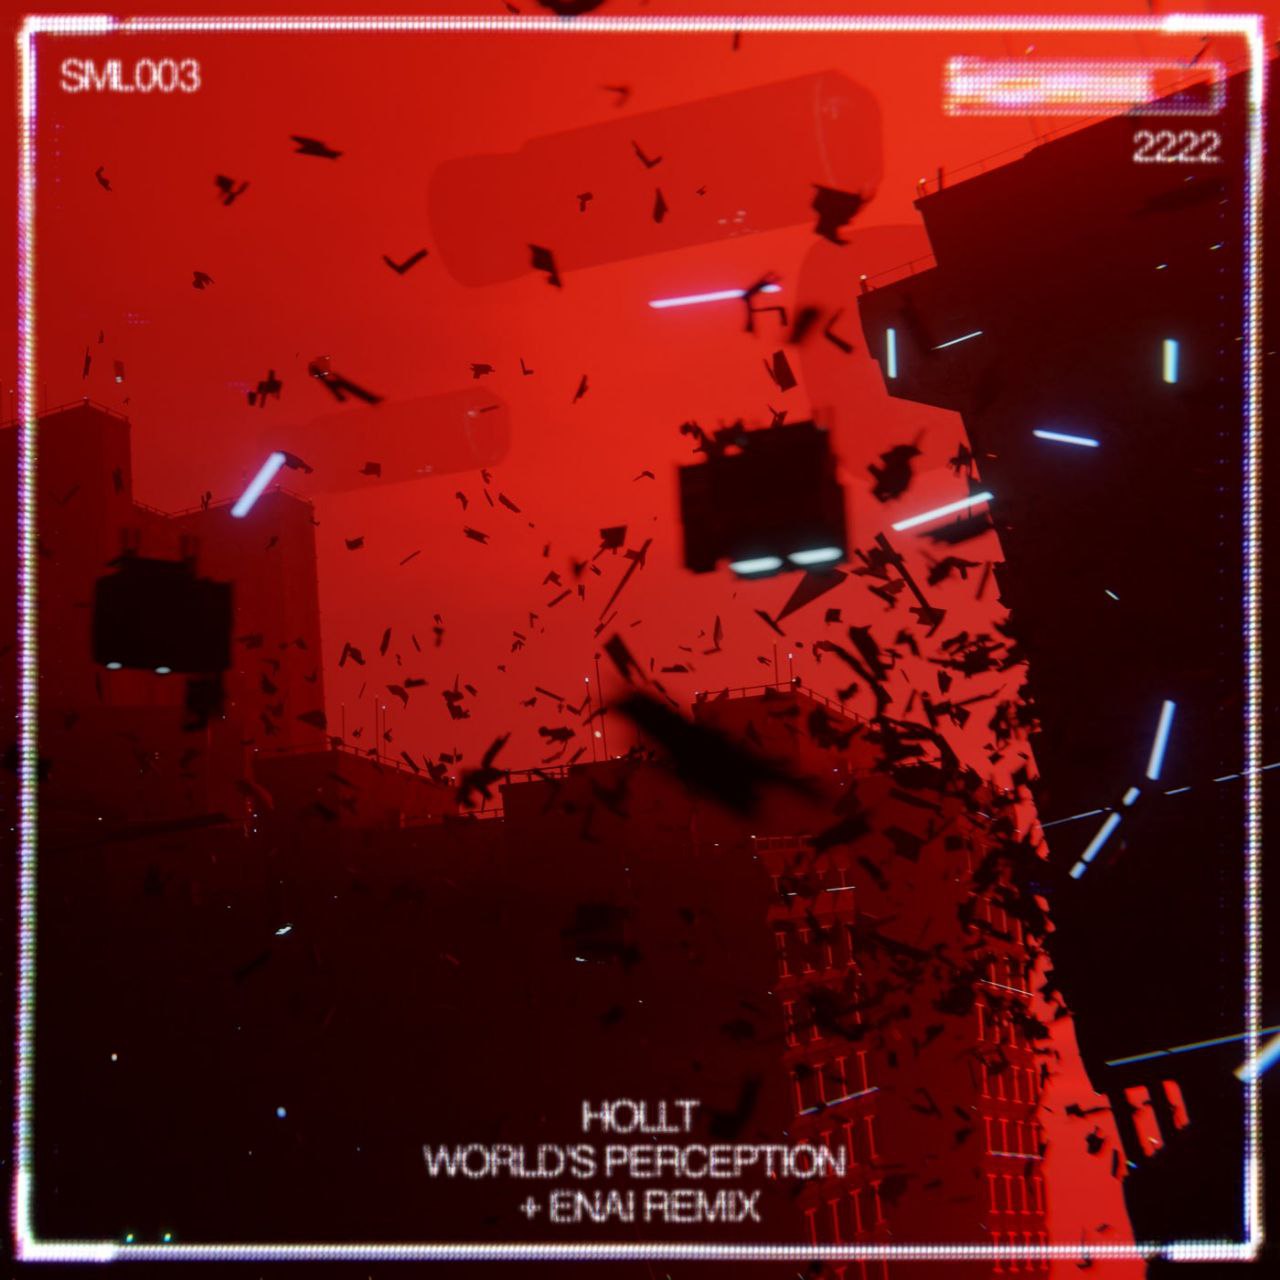 Hollt - World's Perception (Enai Remix) (Extended Mix)